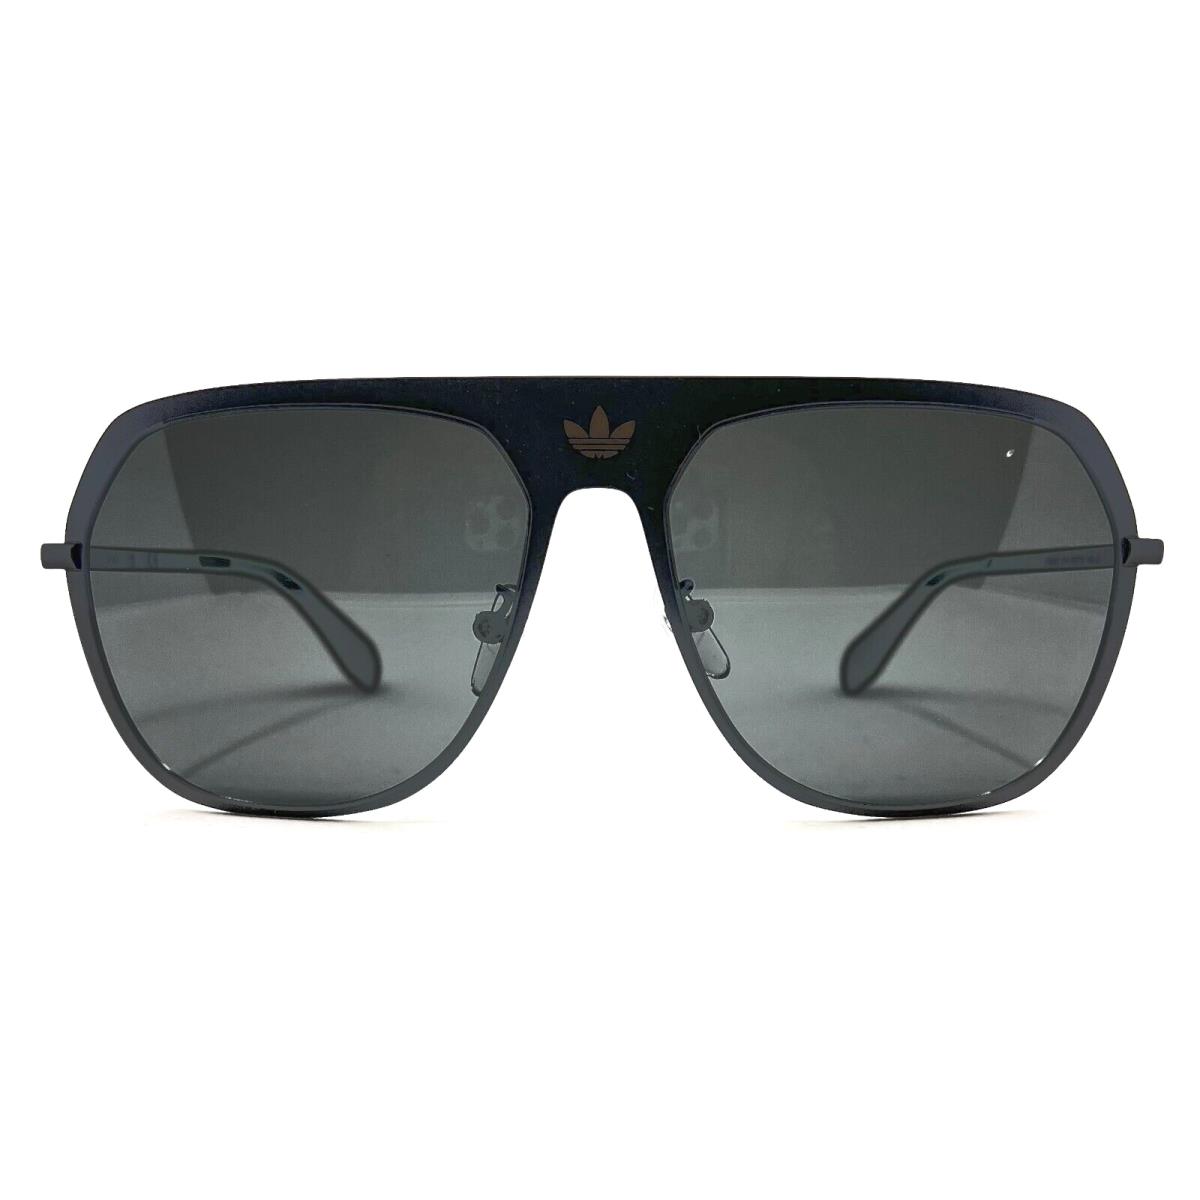 Adidas Originals - OR0037 01A 58/15/140 - Black Sunglasses Case